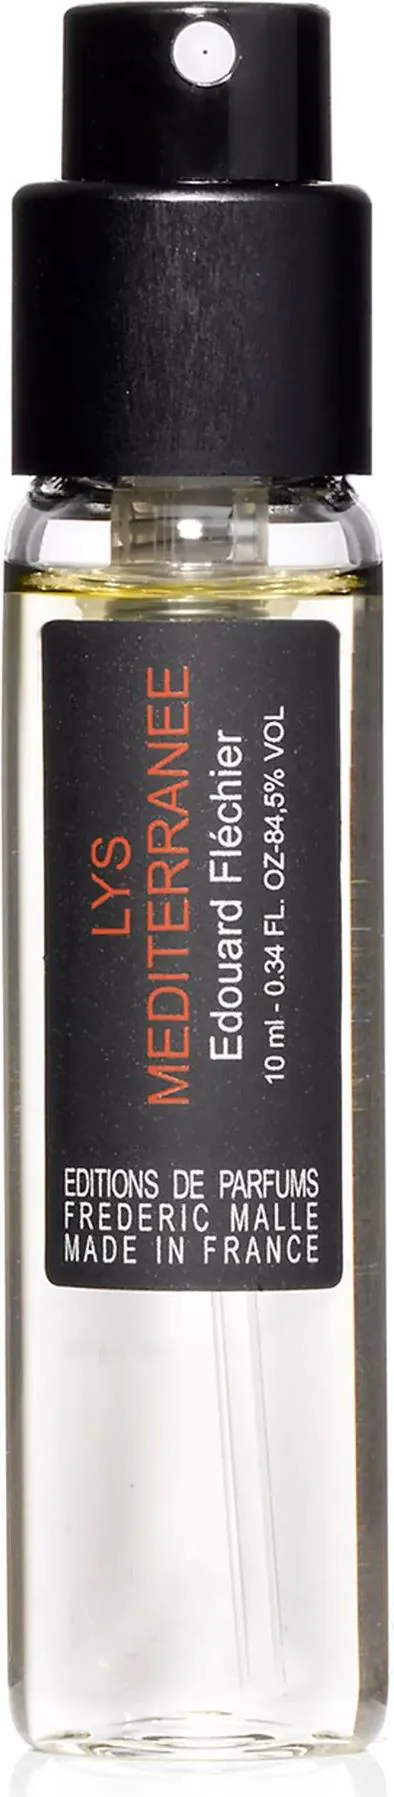 Frédéric Malle Lys Méditerranée Perfume Spray